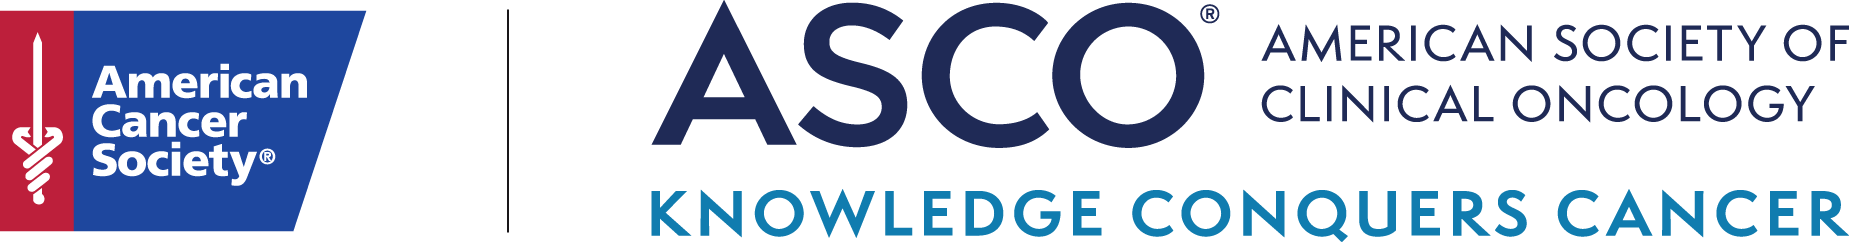 ACS ASCO logo